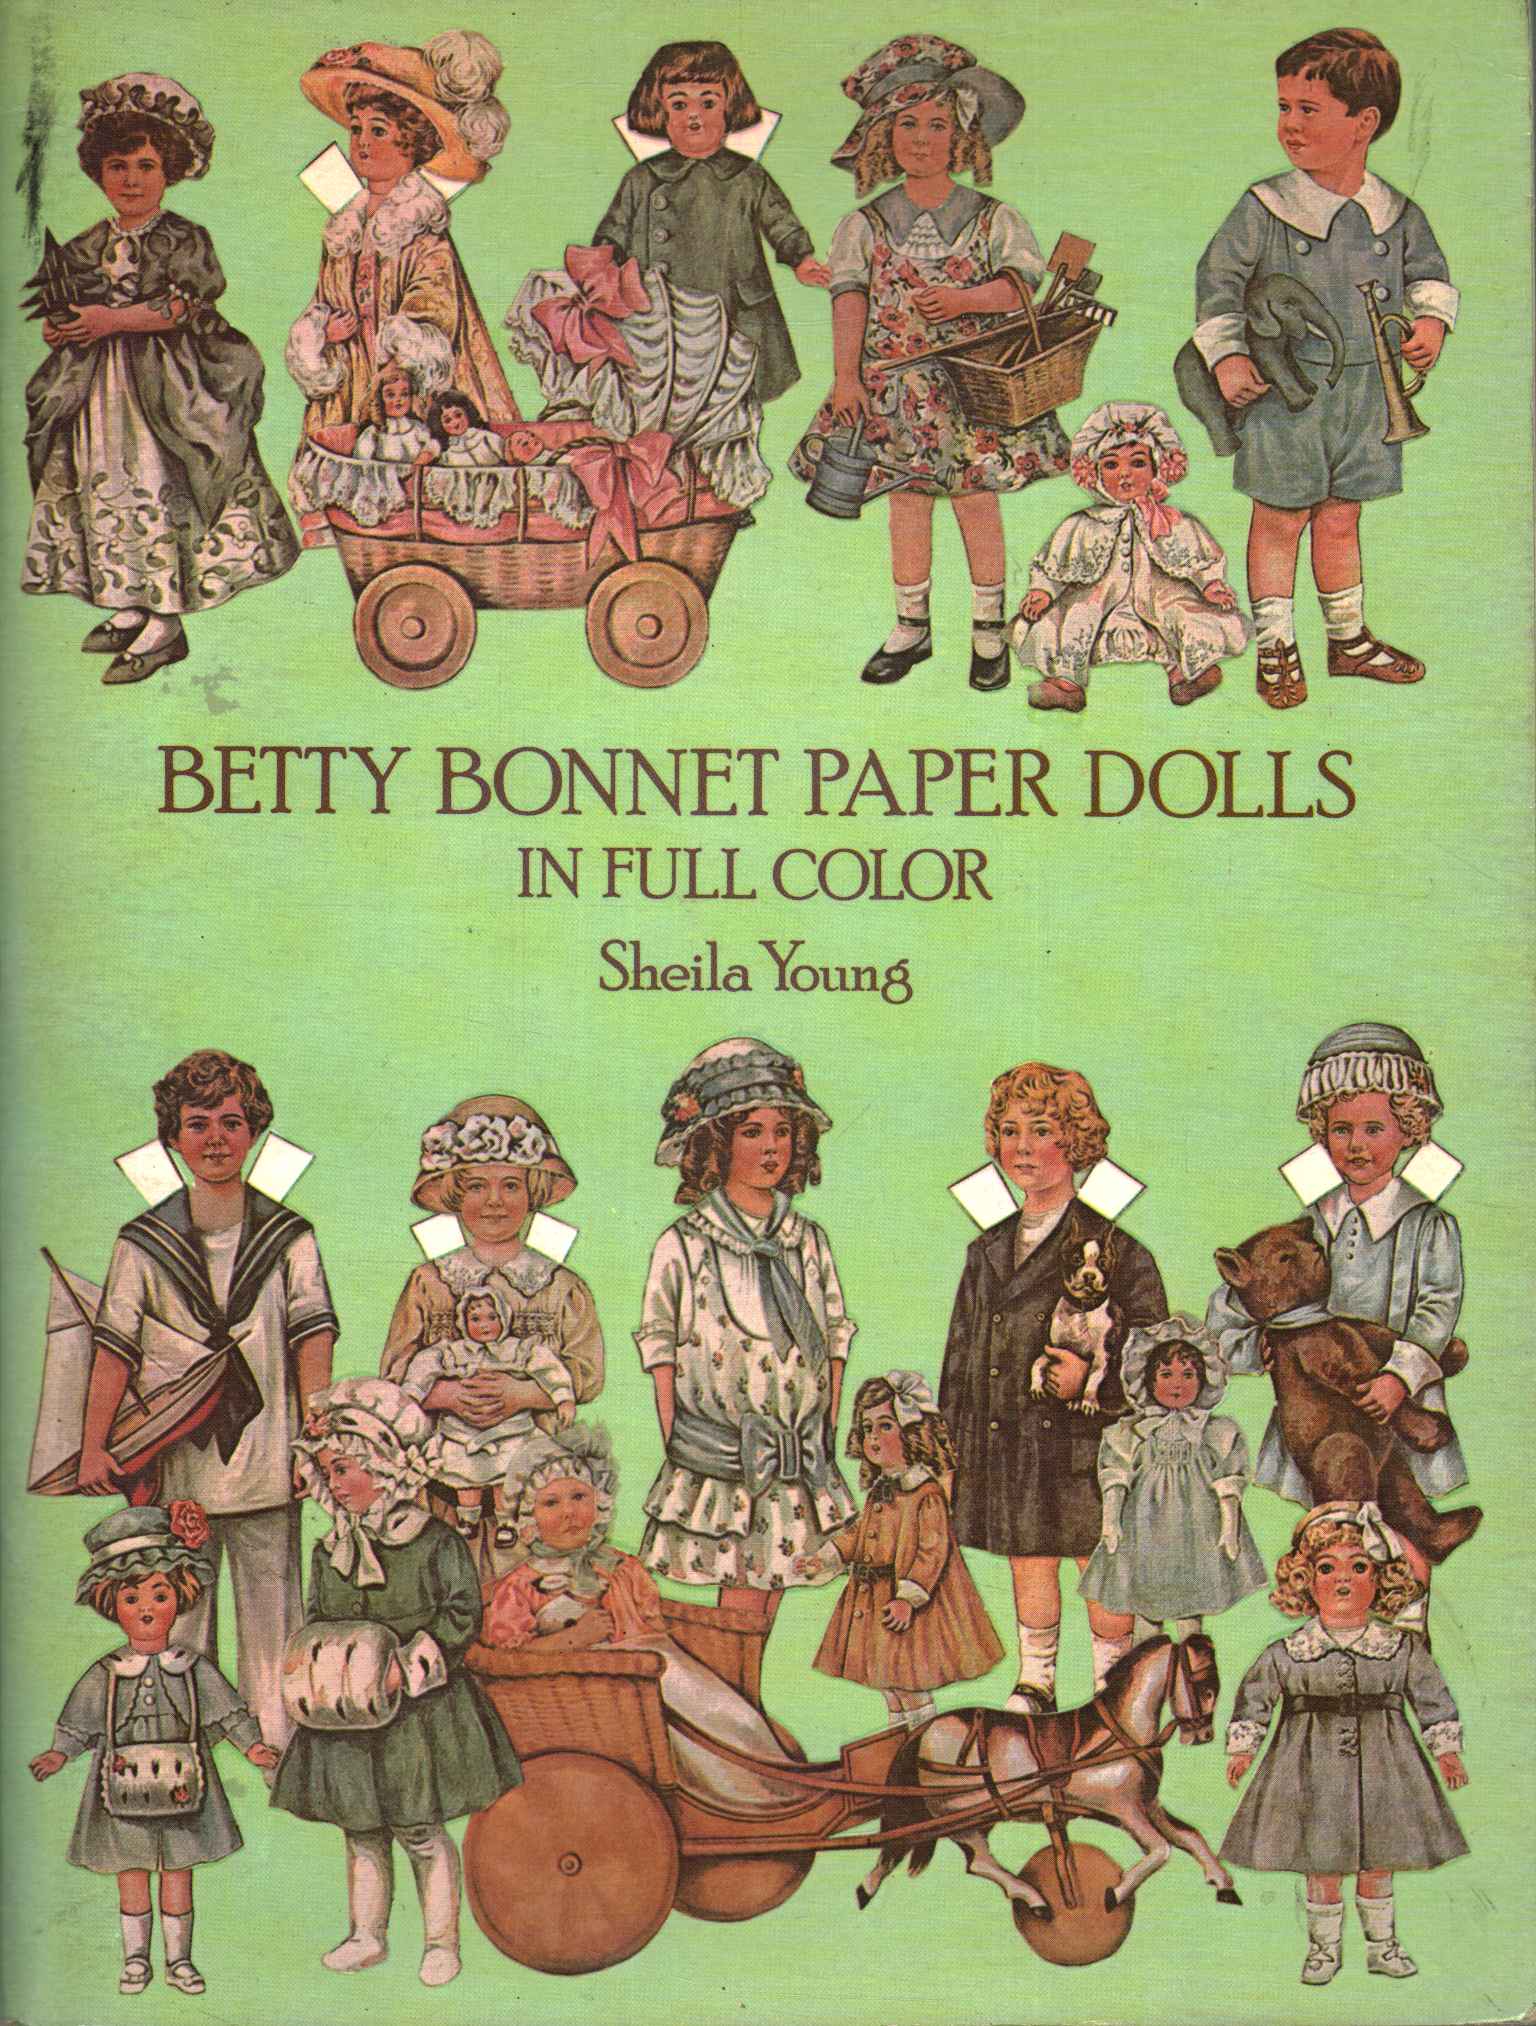 Betty Bonnet Papierpuppen